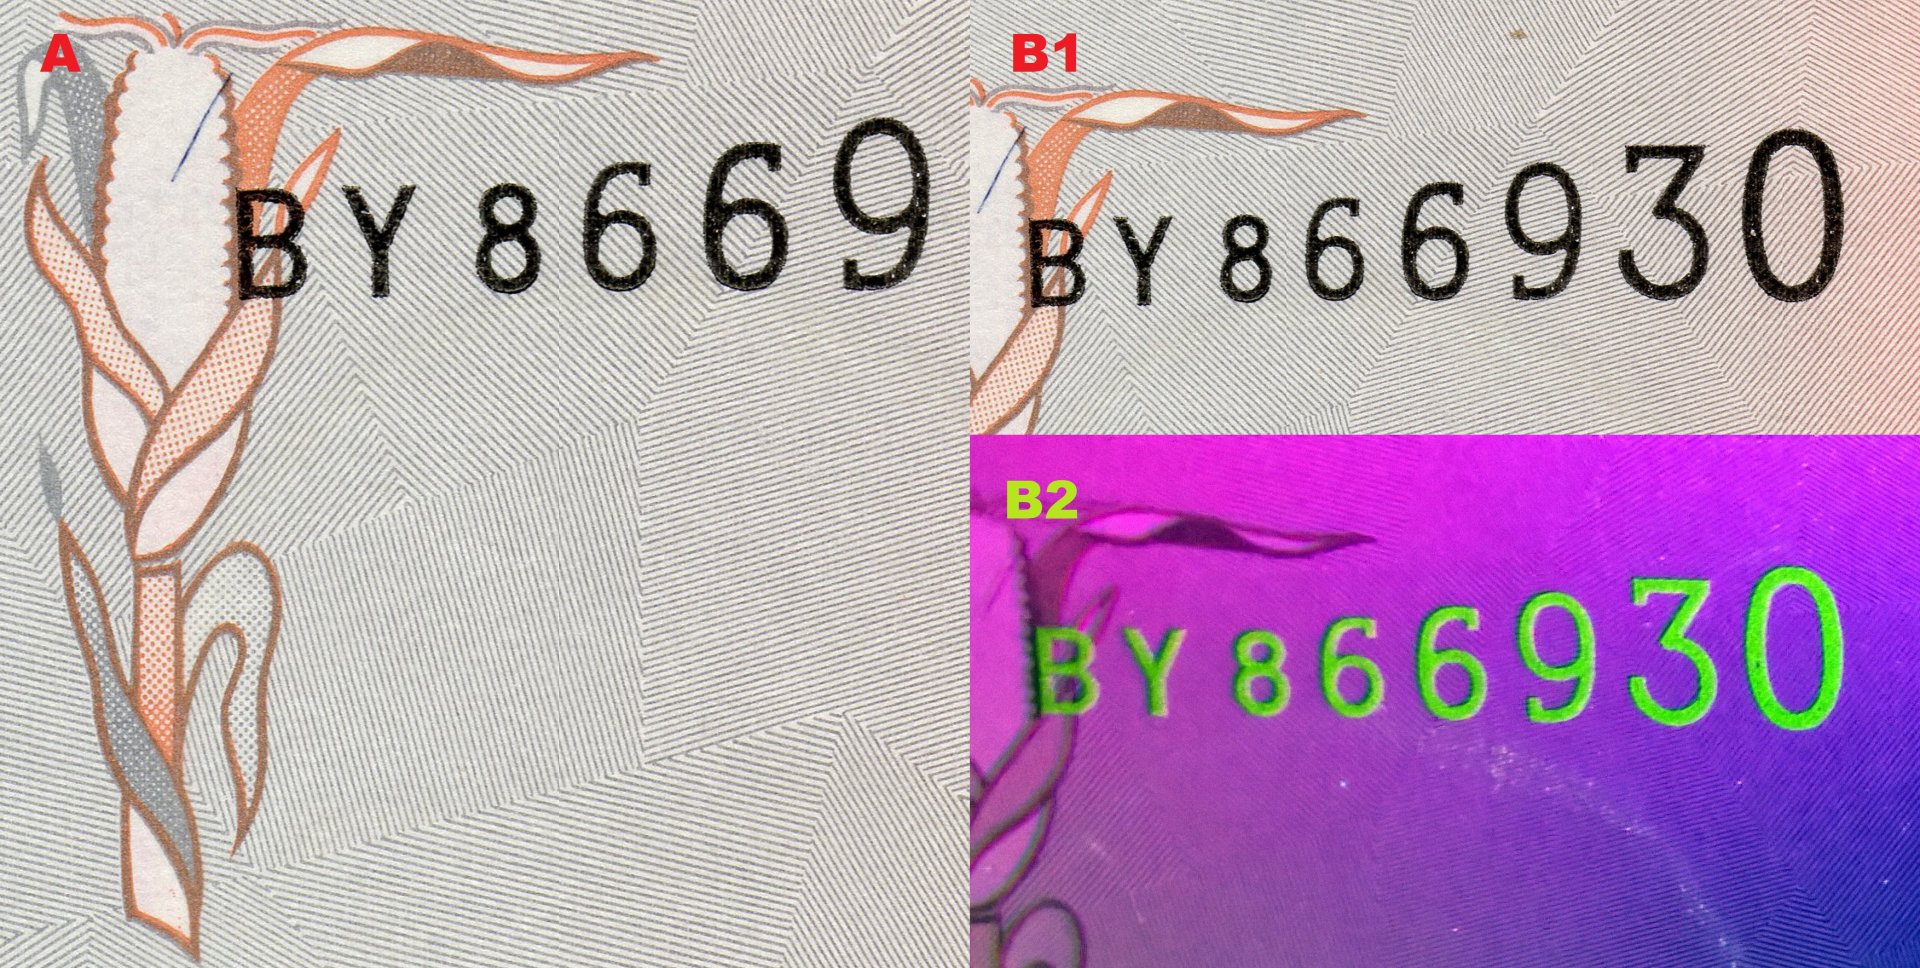 Obr. 1. A) Soutisková značka v podobě klasu kukuřice, v podkladu patrné kárování. B1) Ascendentní sériové číslo. B2) Totéž číslo pod UV nasvícením.